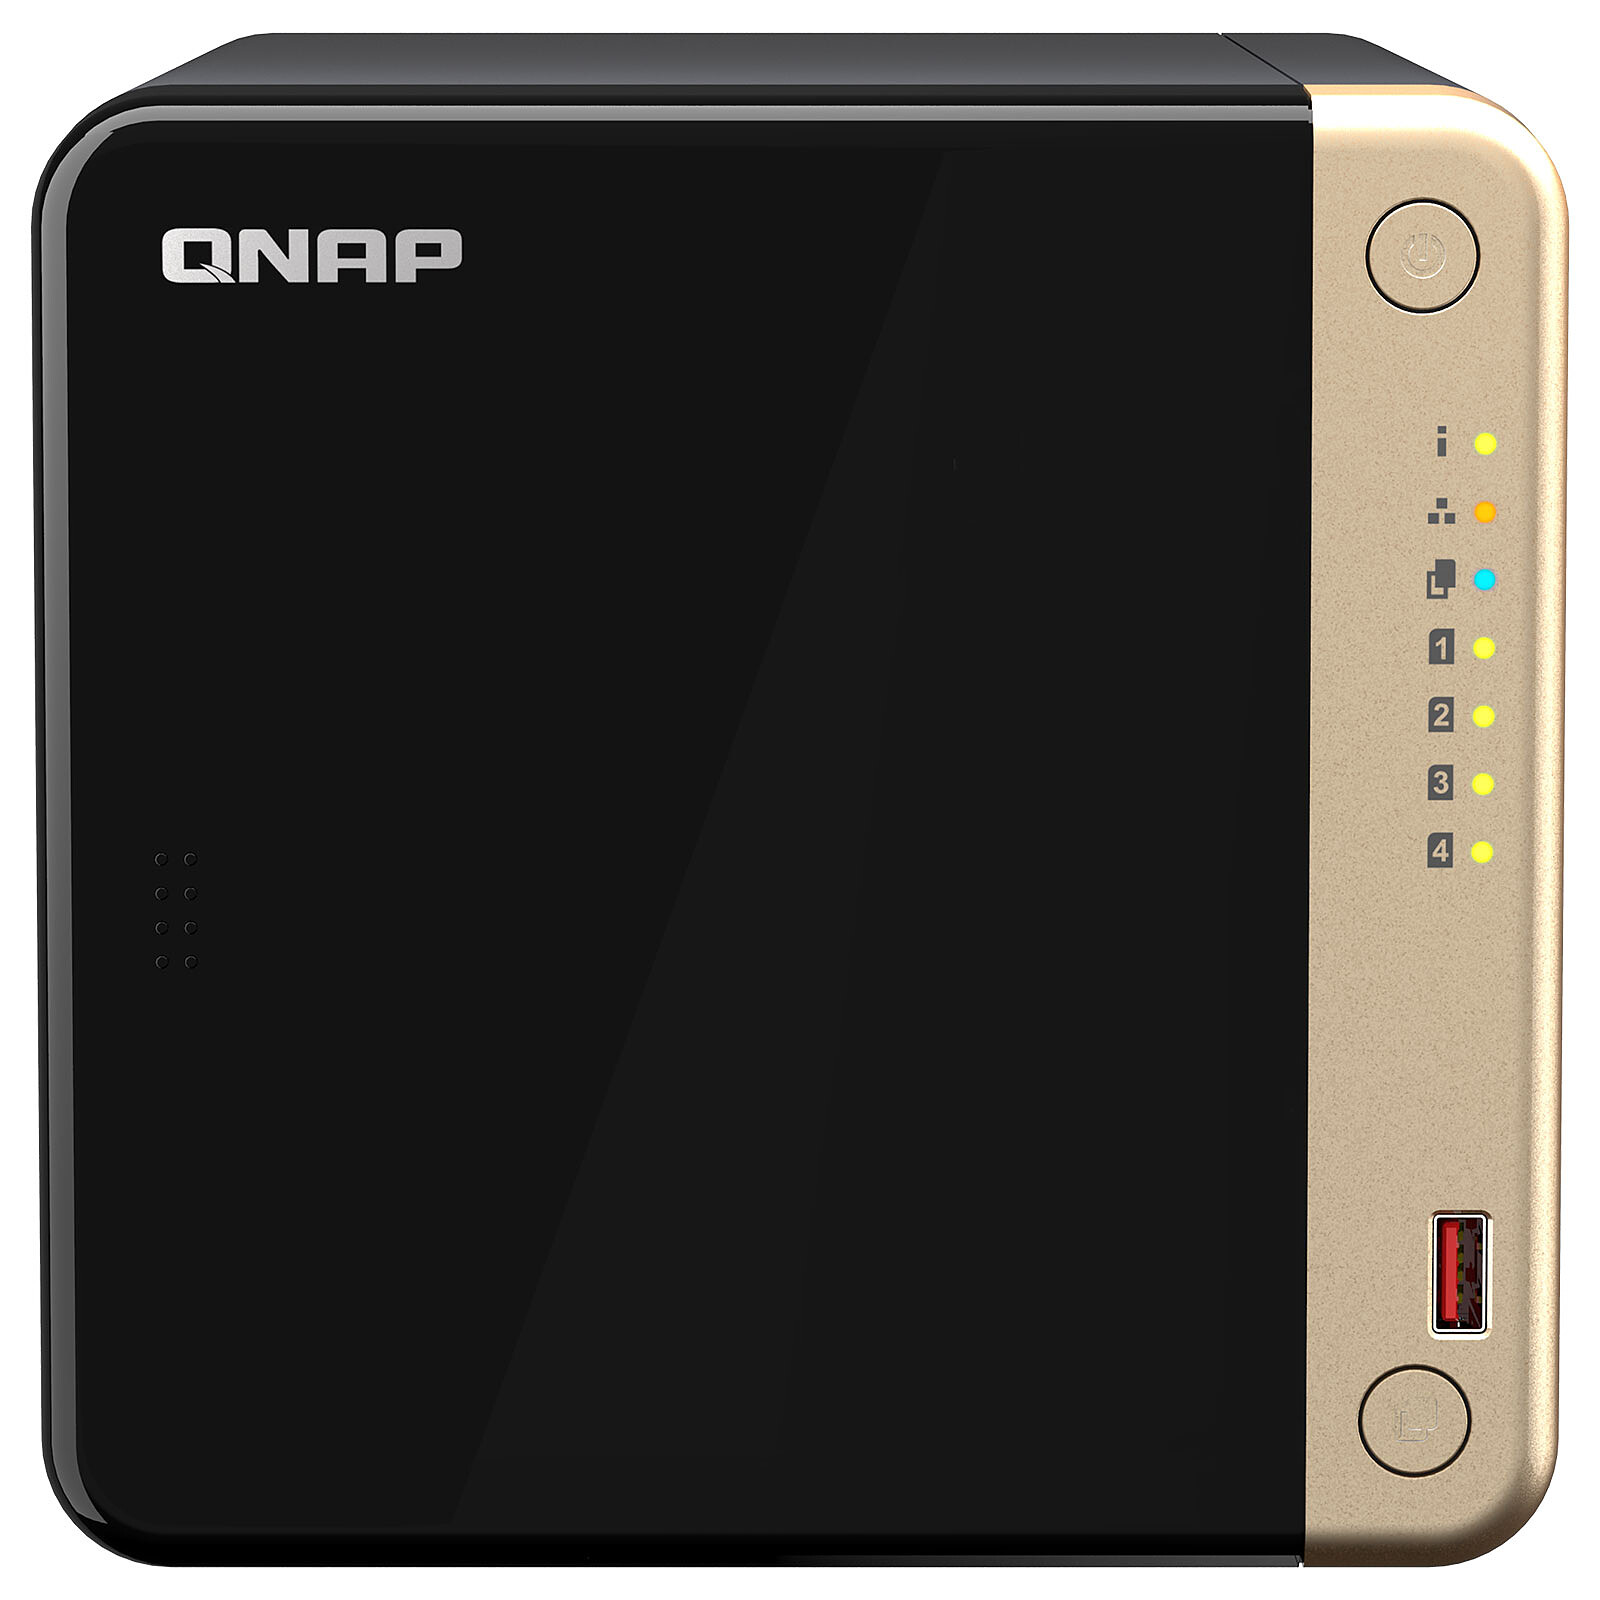 QNAP TBS-464 NASbook - Serveur NAS - 4 Baies - RAID RAID 0, 1, 5